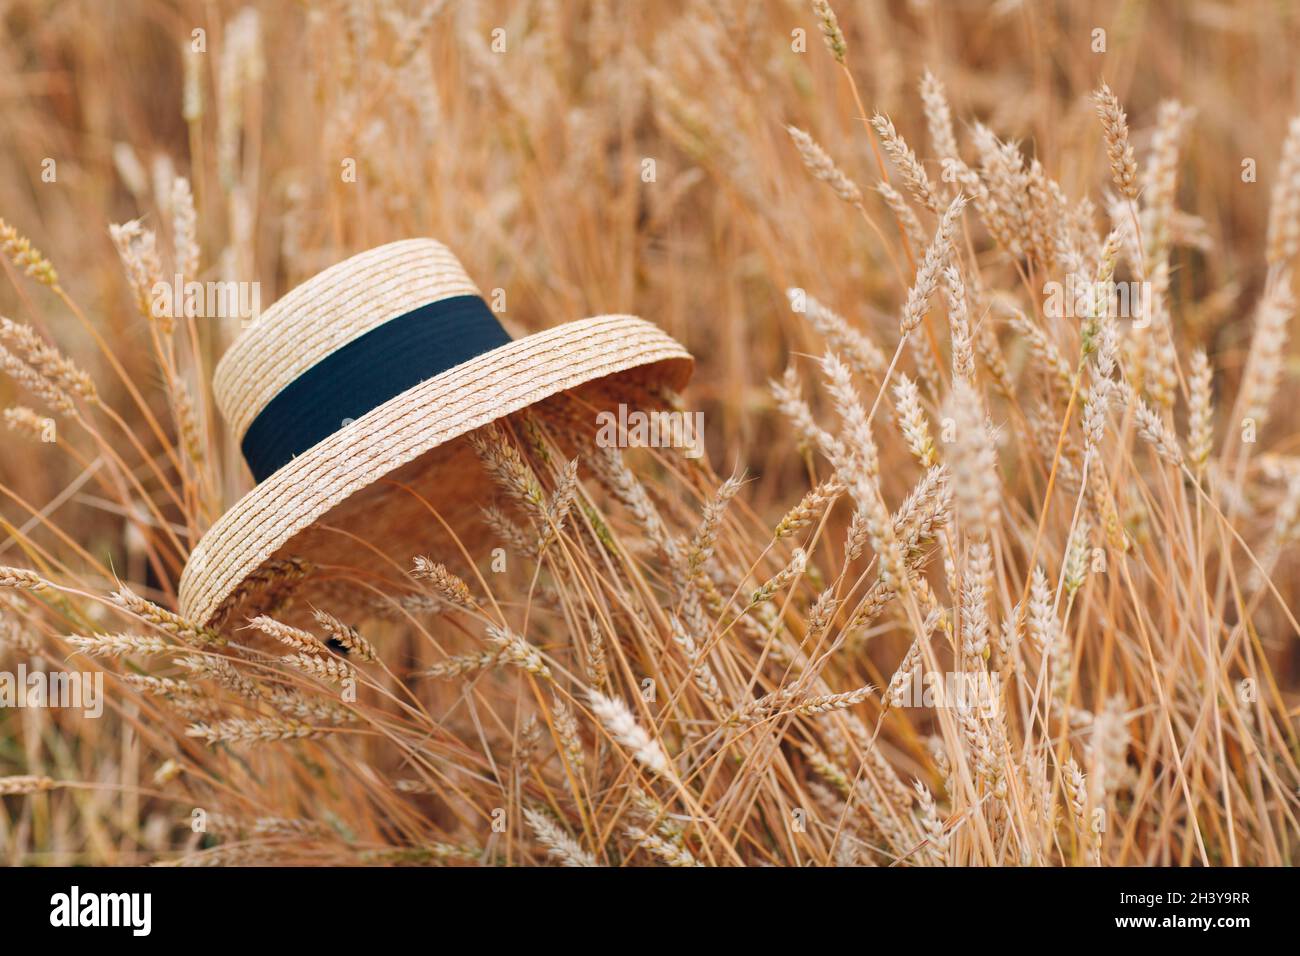 Straw hat in ears of wheat field. Stock Photo